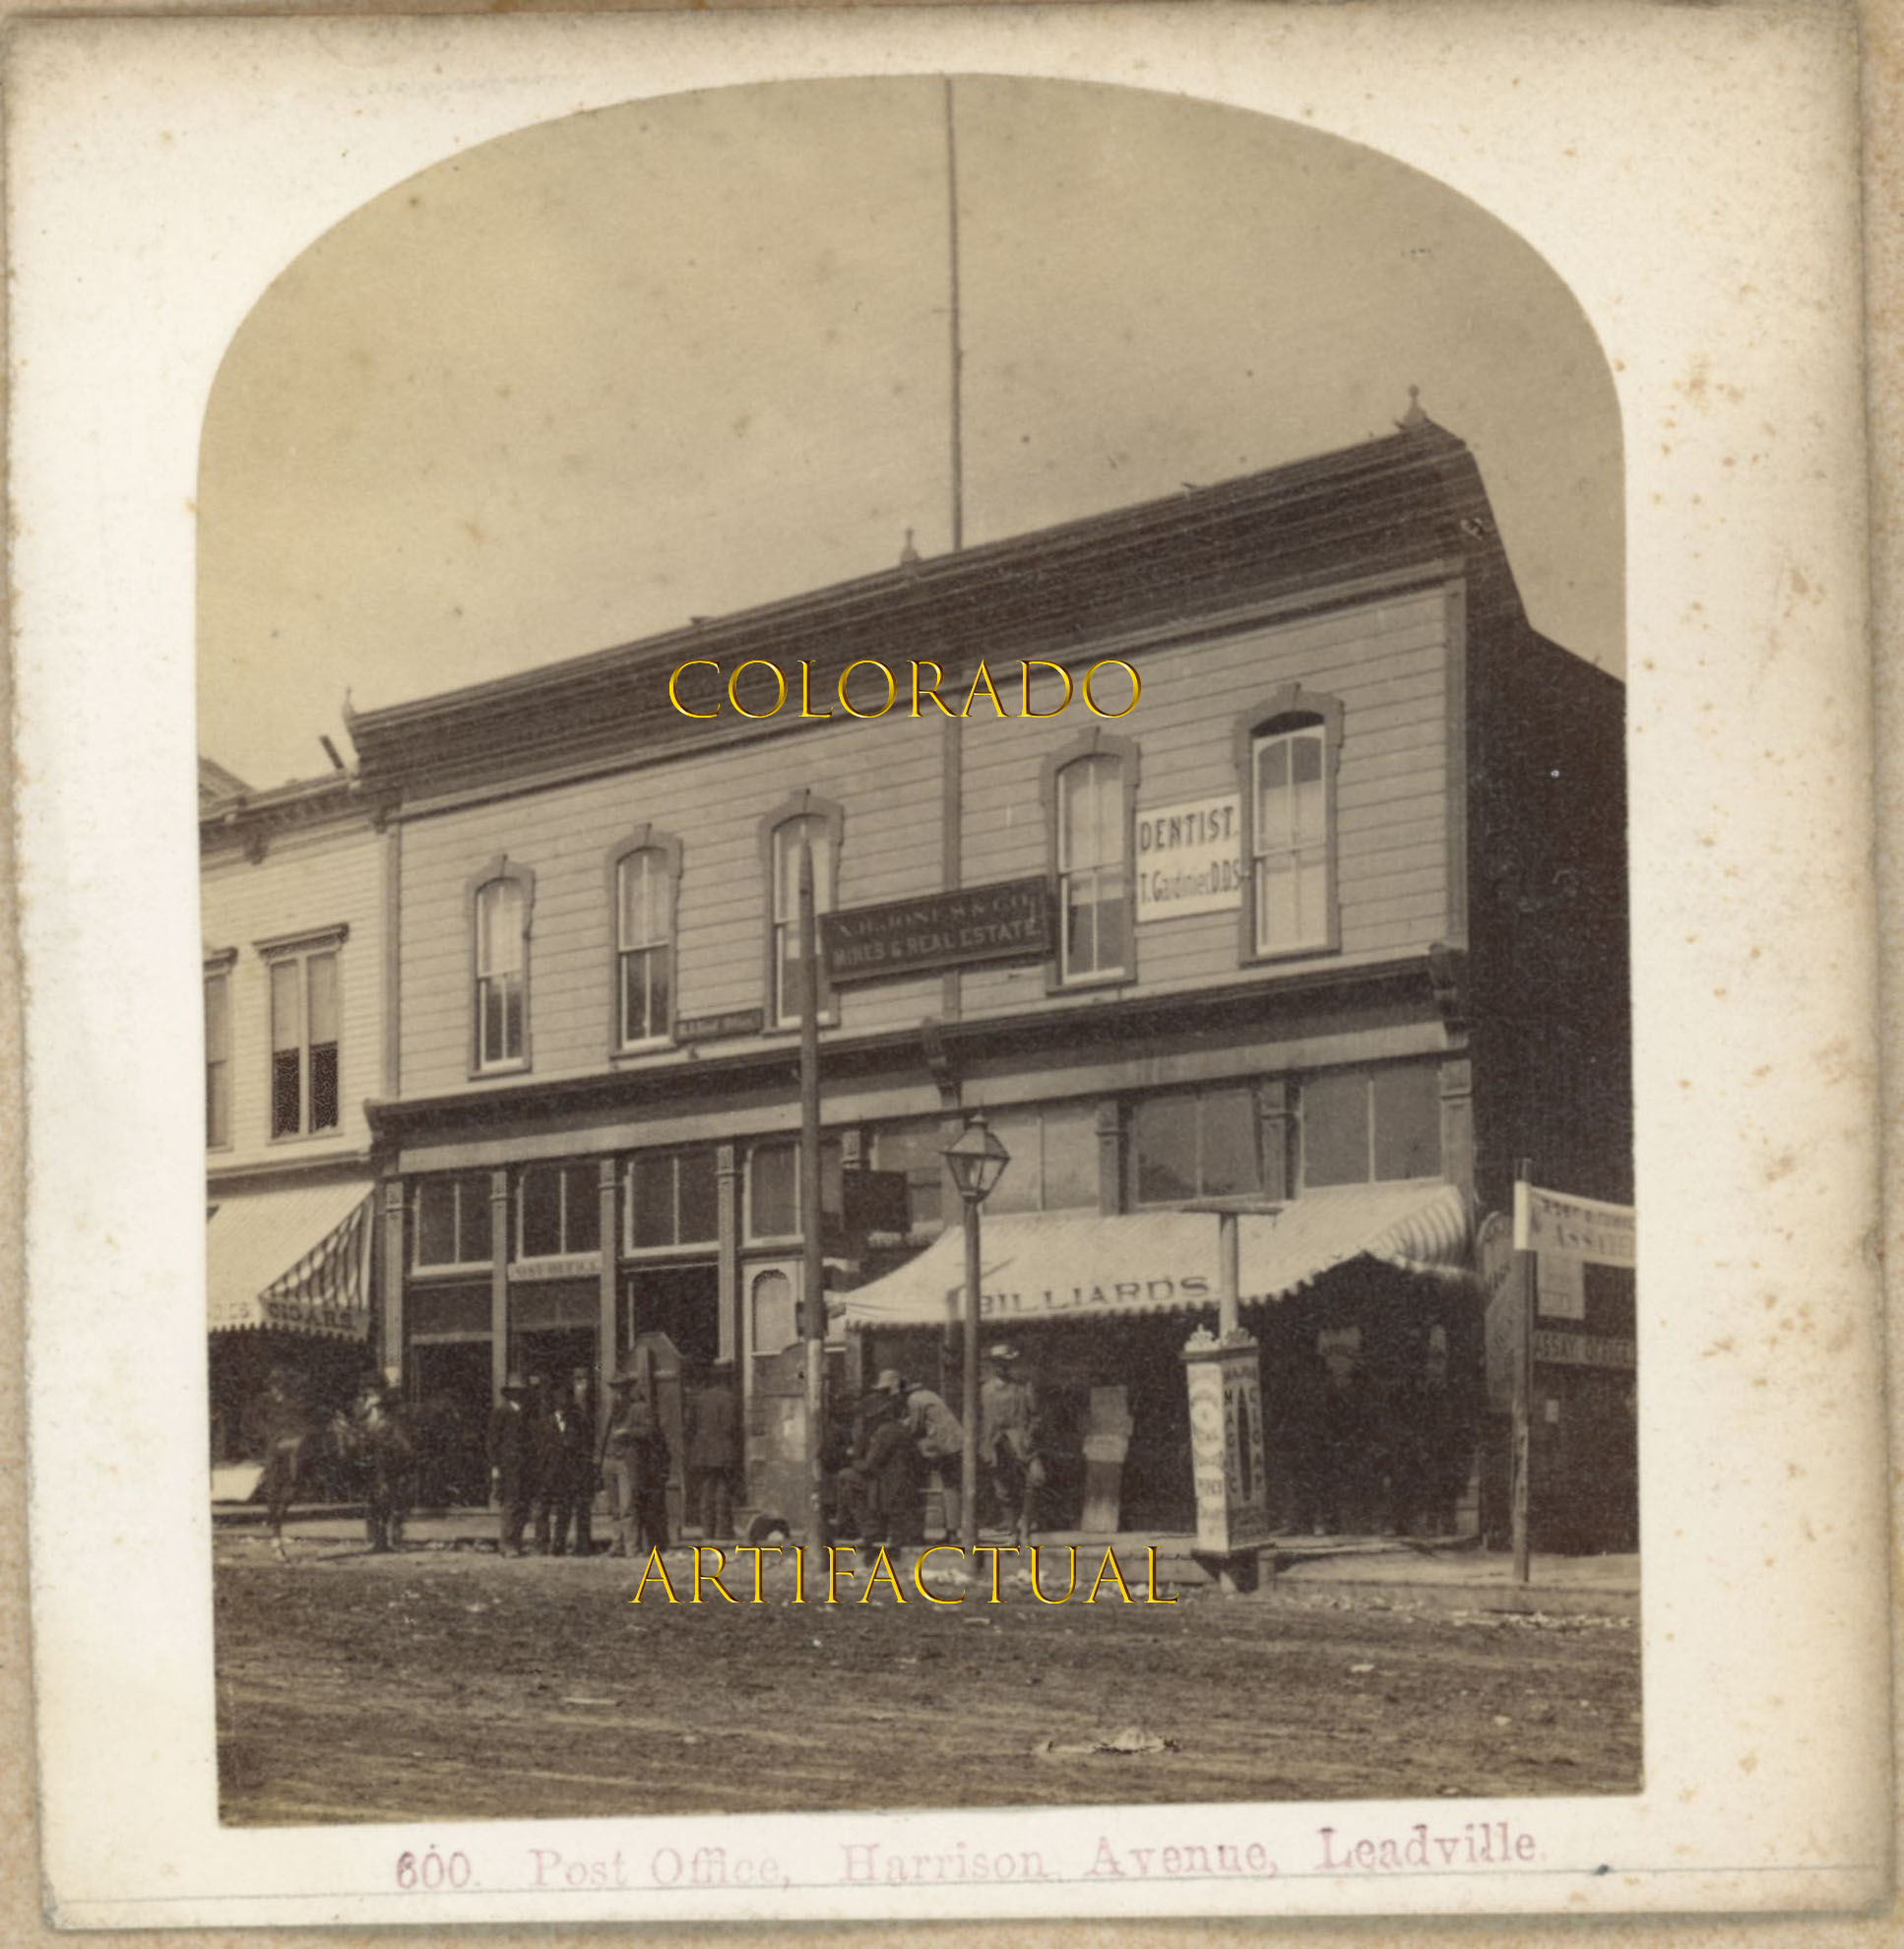 LEADVILLE COLORADO POST OFFICE BUILDING, HARRISON AVENUE W.H. Jackson photograph 1879